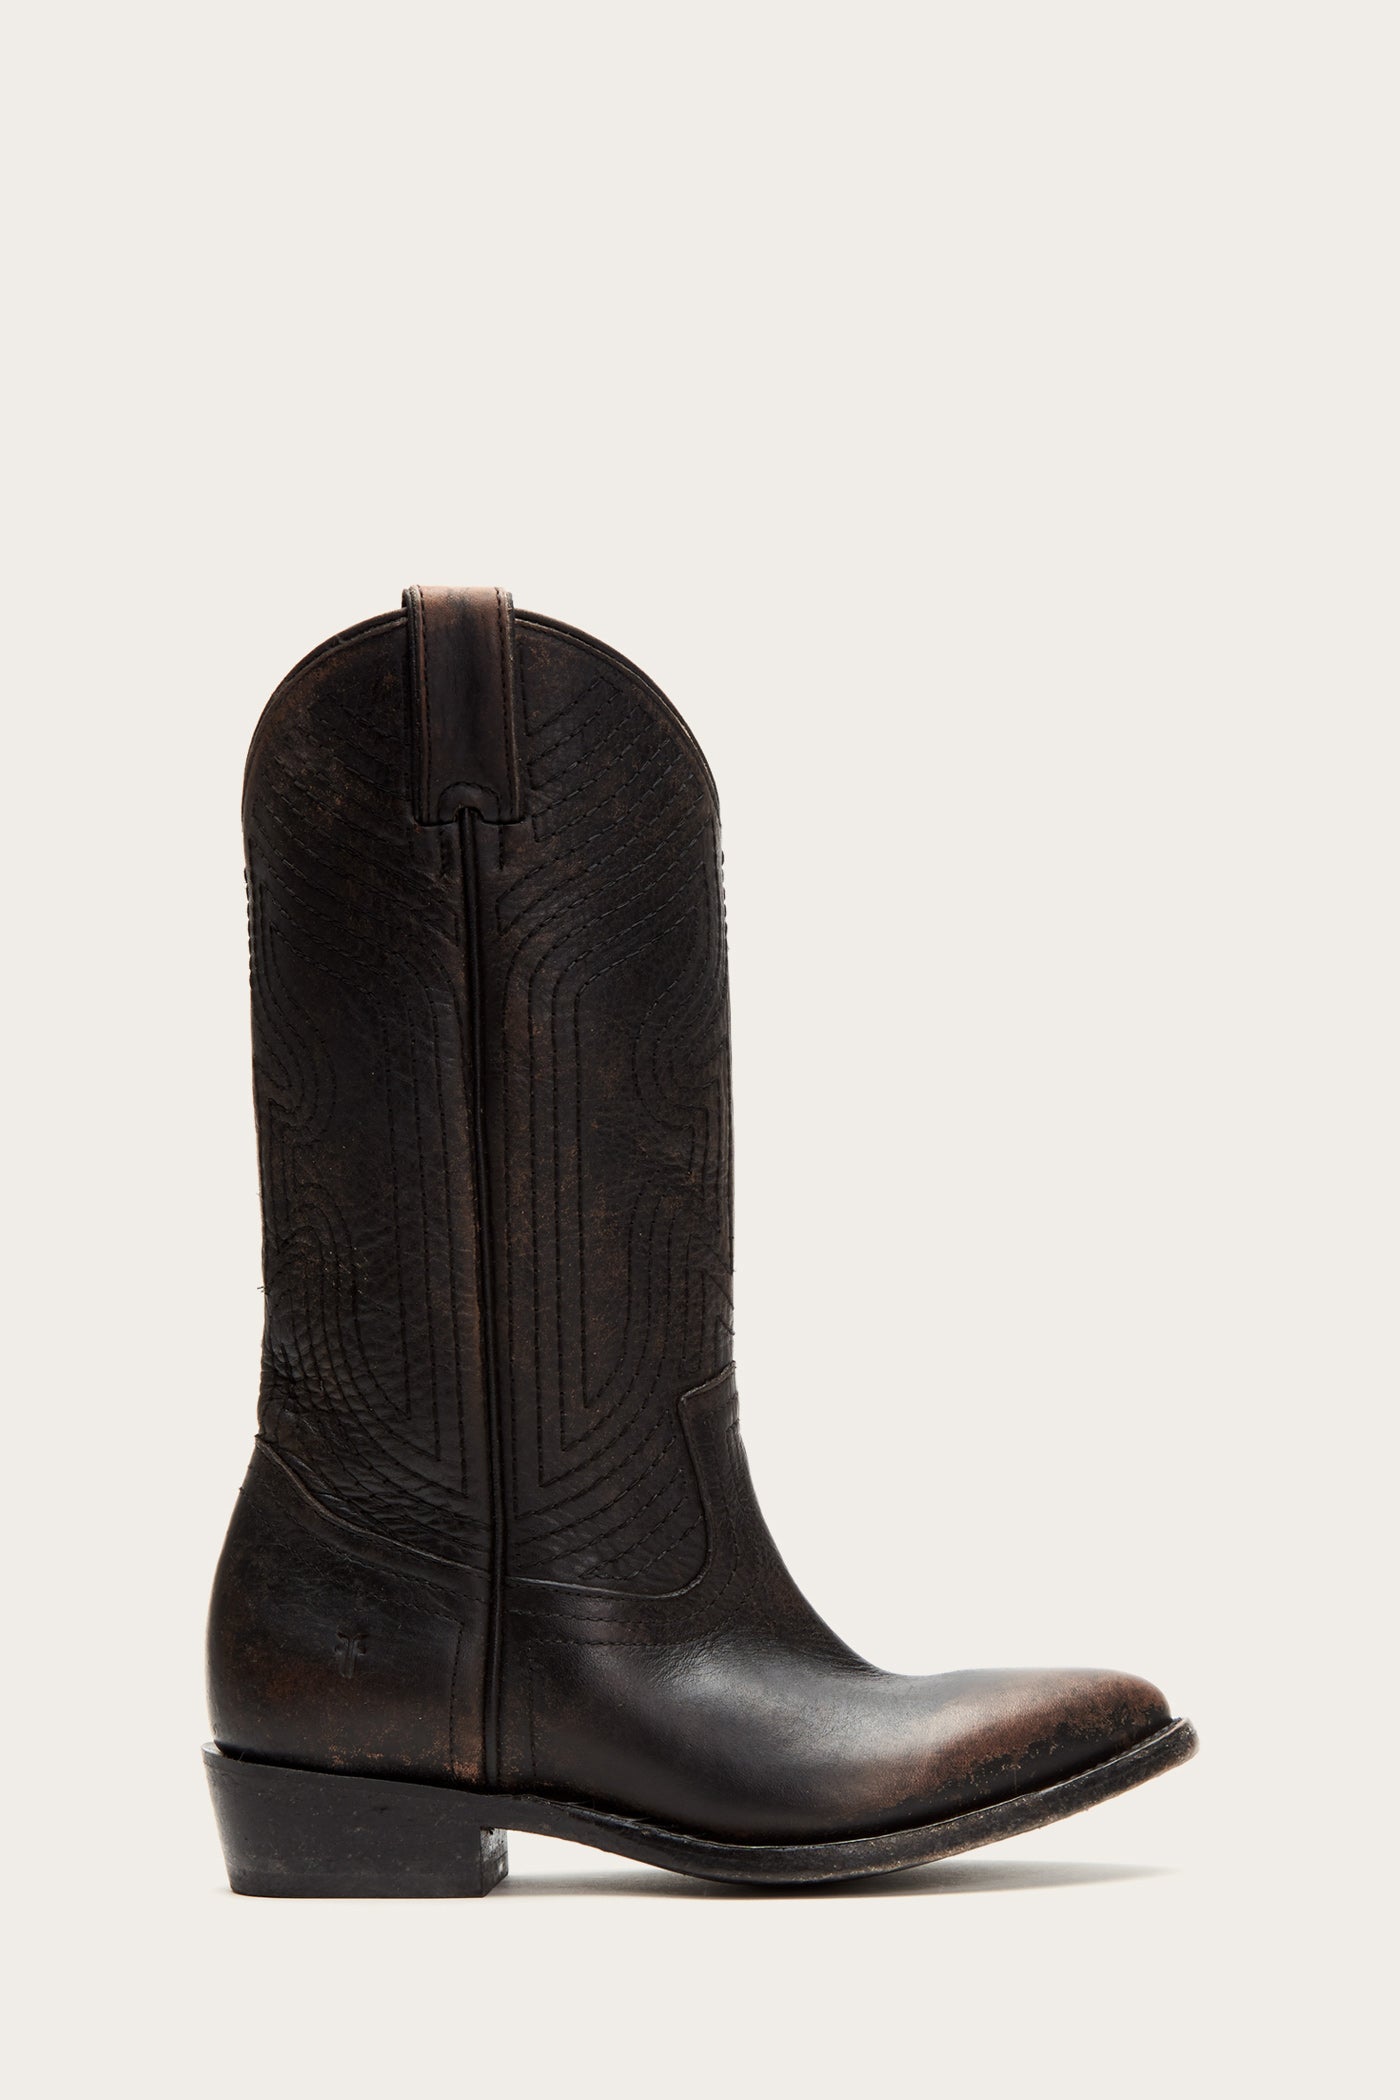 frye women's billy western boot